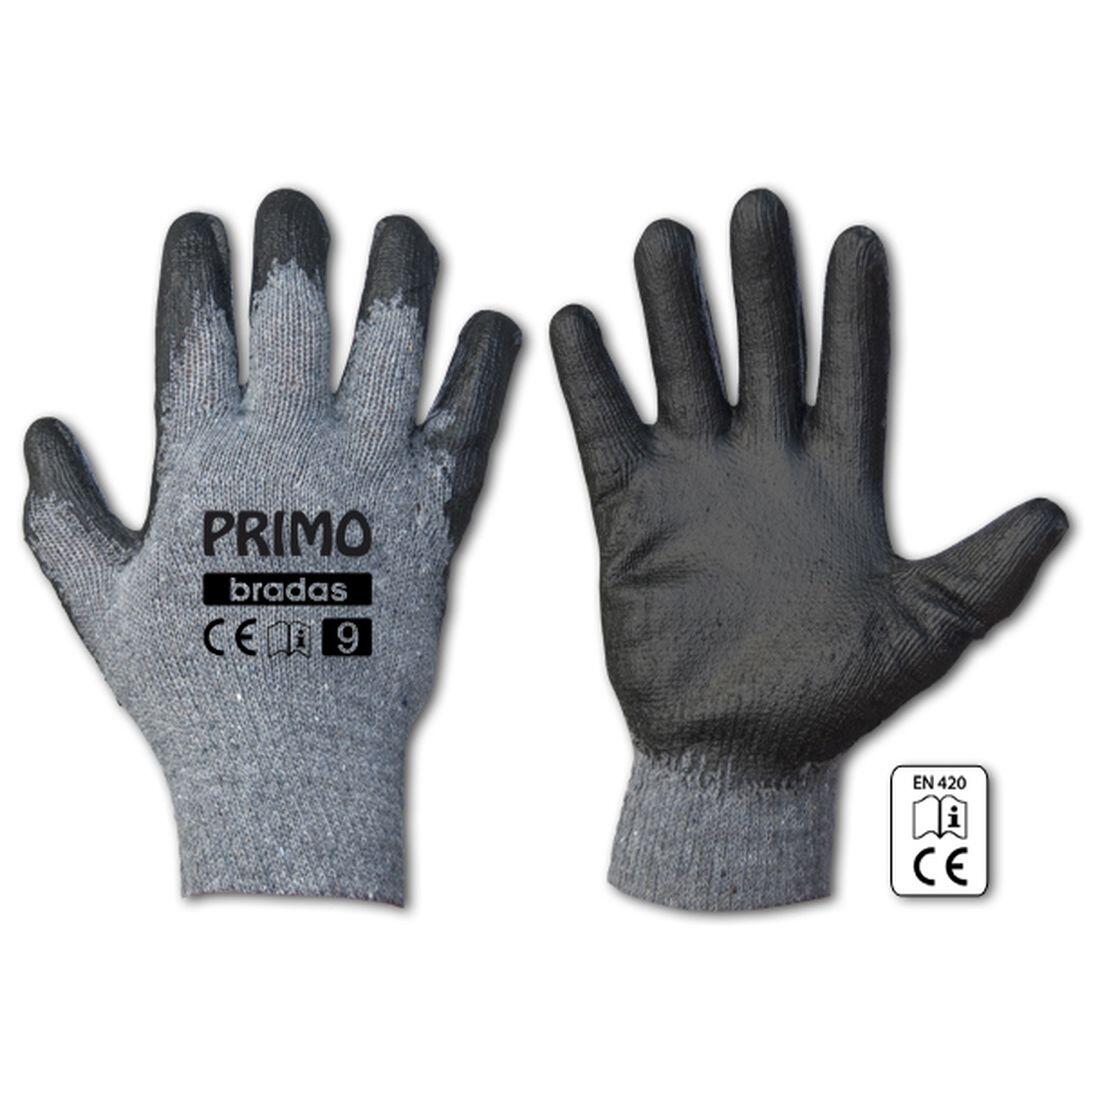 rukavice PRIMO latex 10 0.07 Kg MAXMIX Sklad14 715684 978